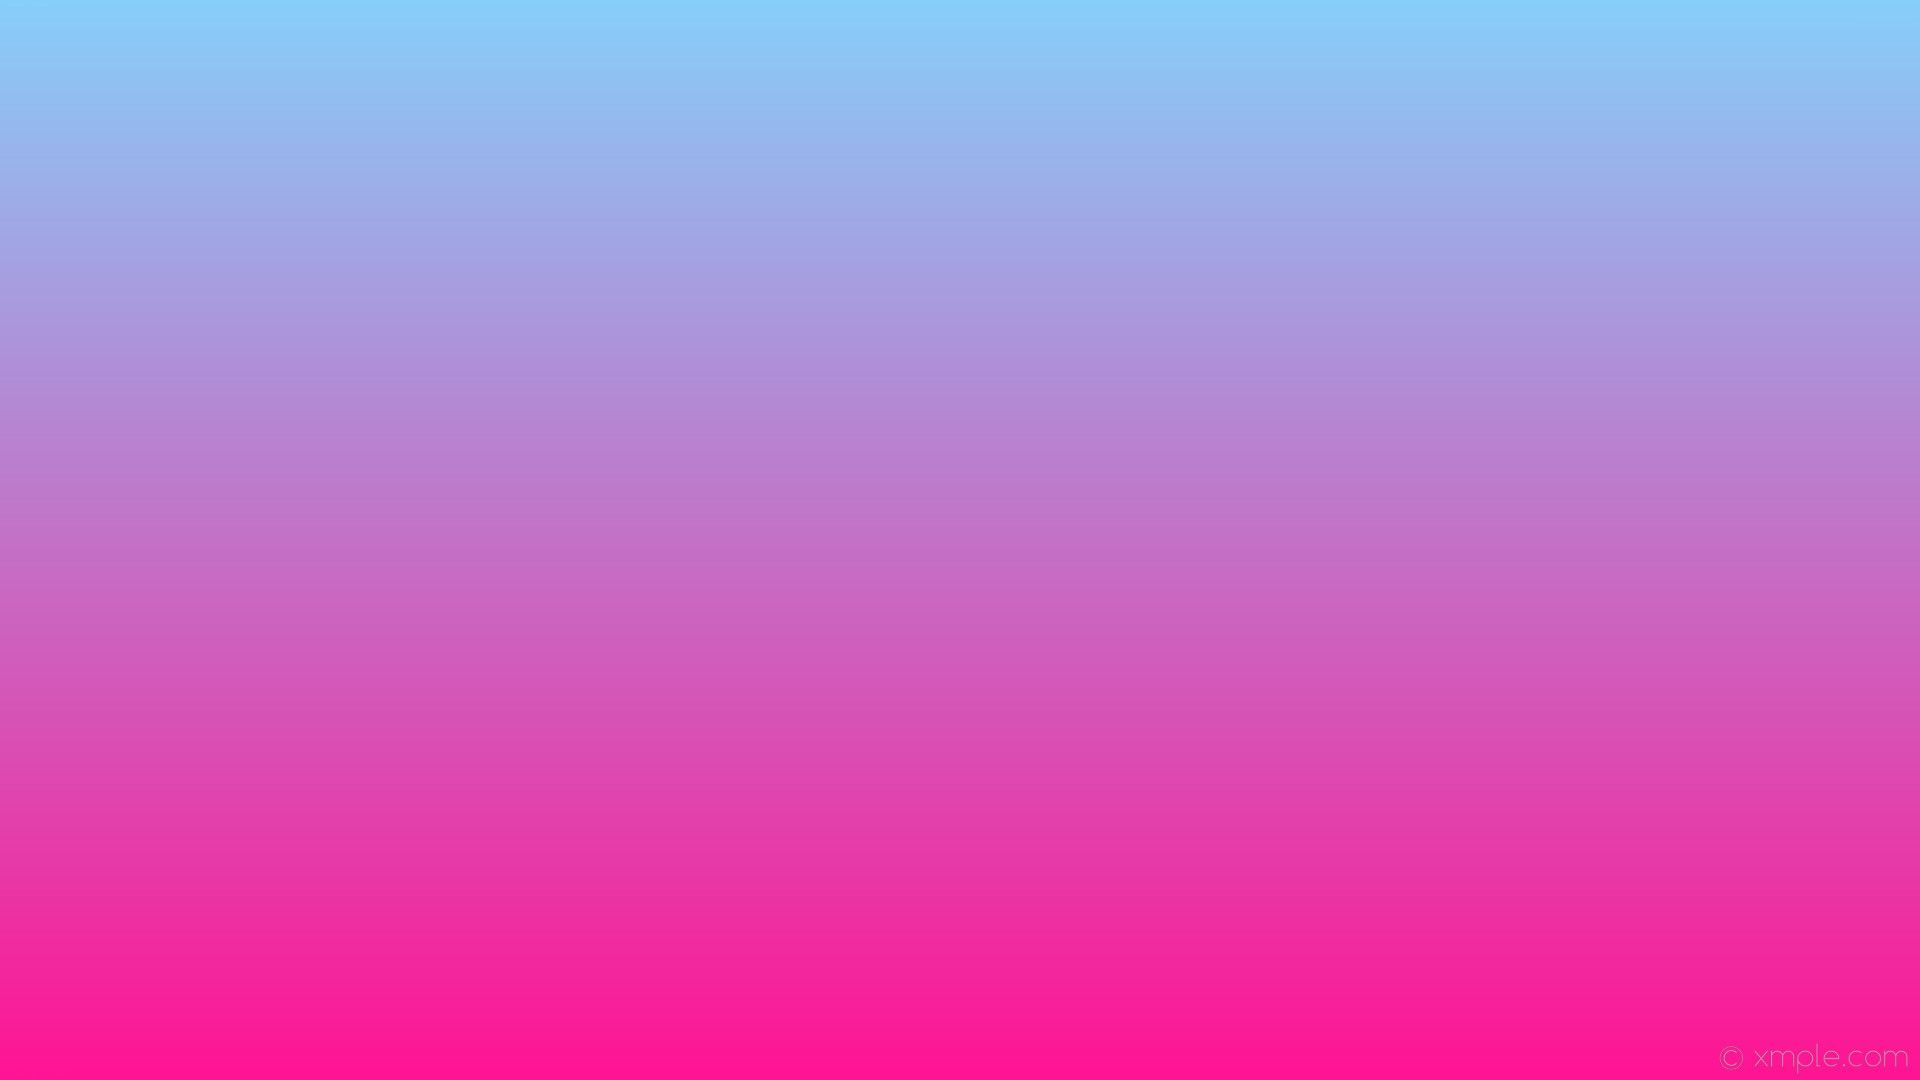 1920x1080 wallpaper blue linear gradient pink deep pink light sky blue #ff1493 #87cefa 270&Atilde;&#130;&Acirc;&deg; | Fondo de colores lisos, Fondos de colores, Fondos degradados